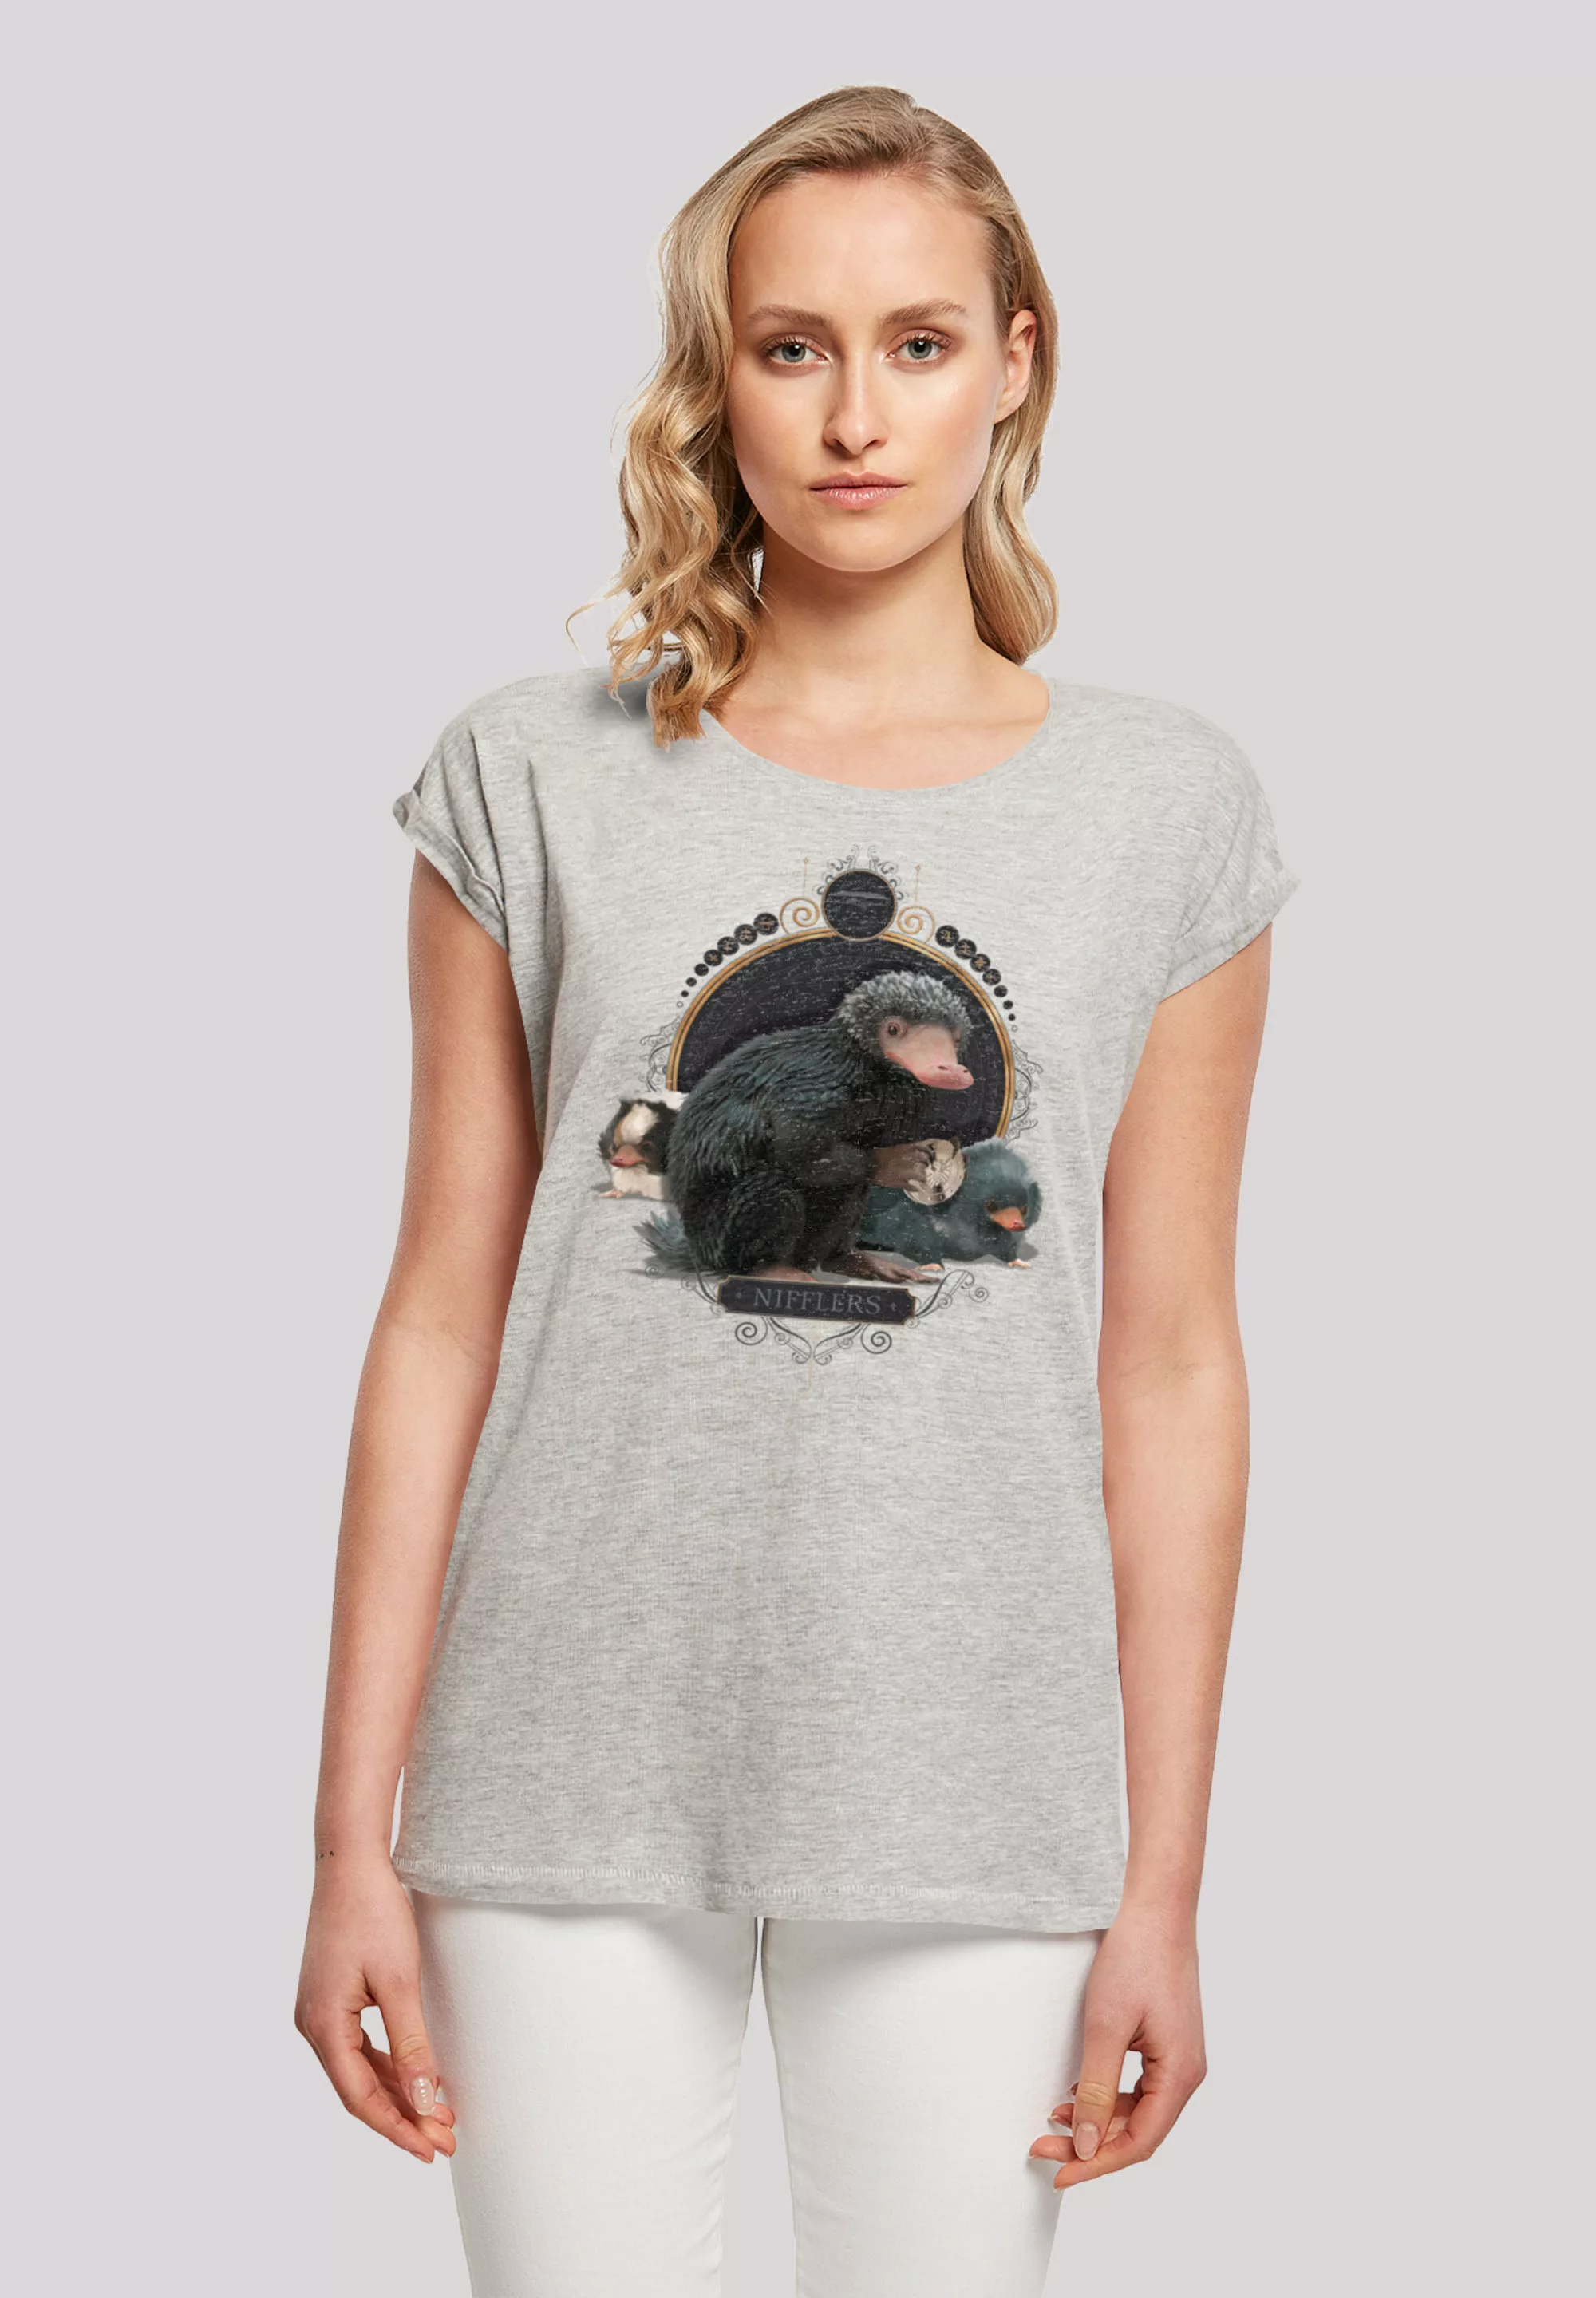 F4NT4STIC T-Shirt "Phantastische Tierwesen Baby Nifflers", Print günstig online kaufen